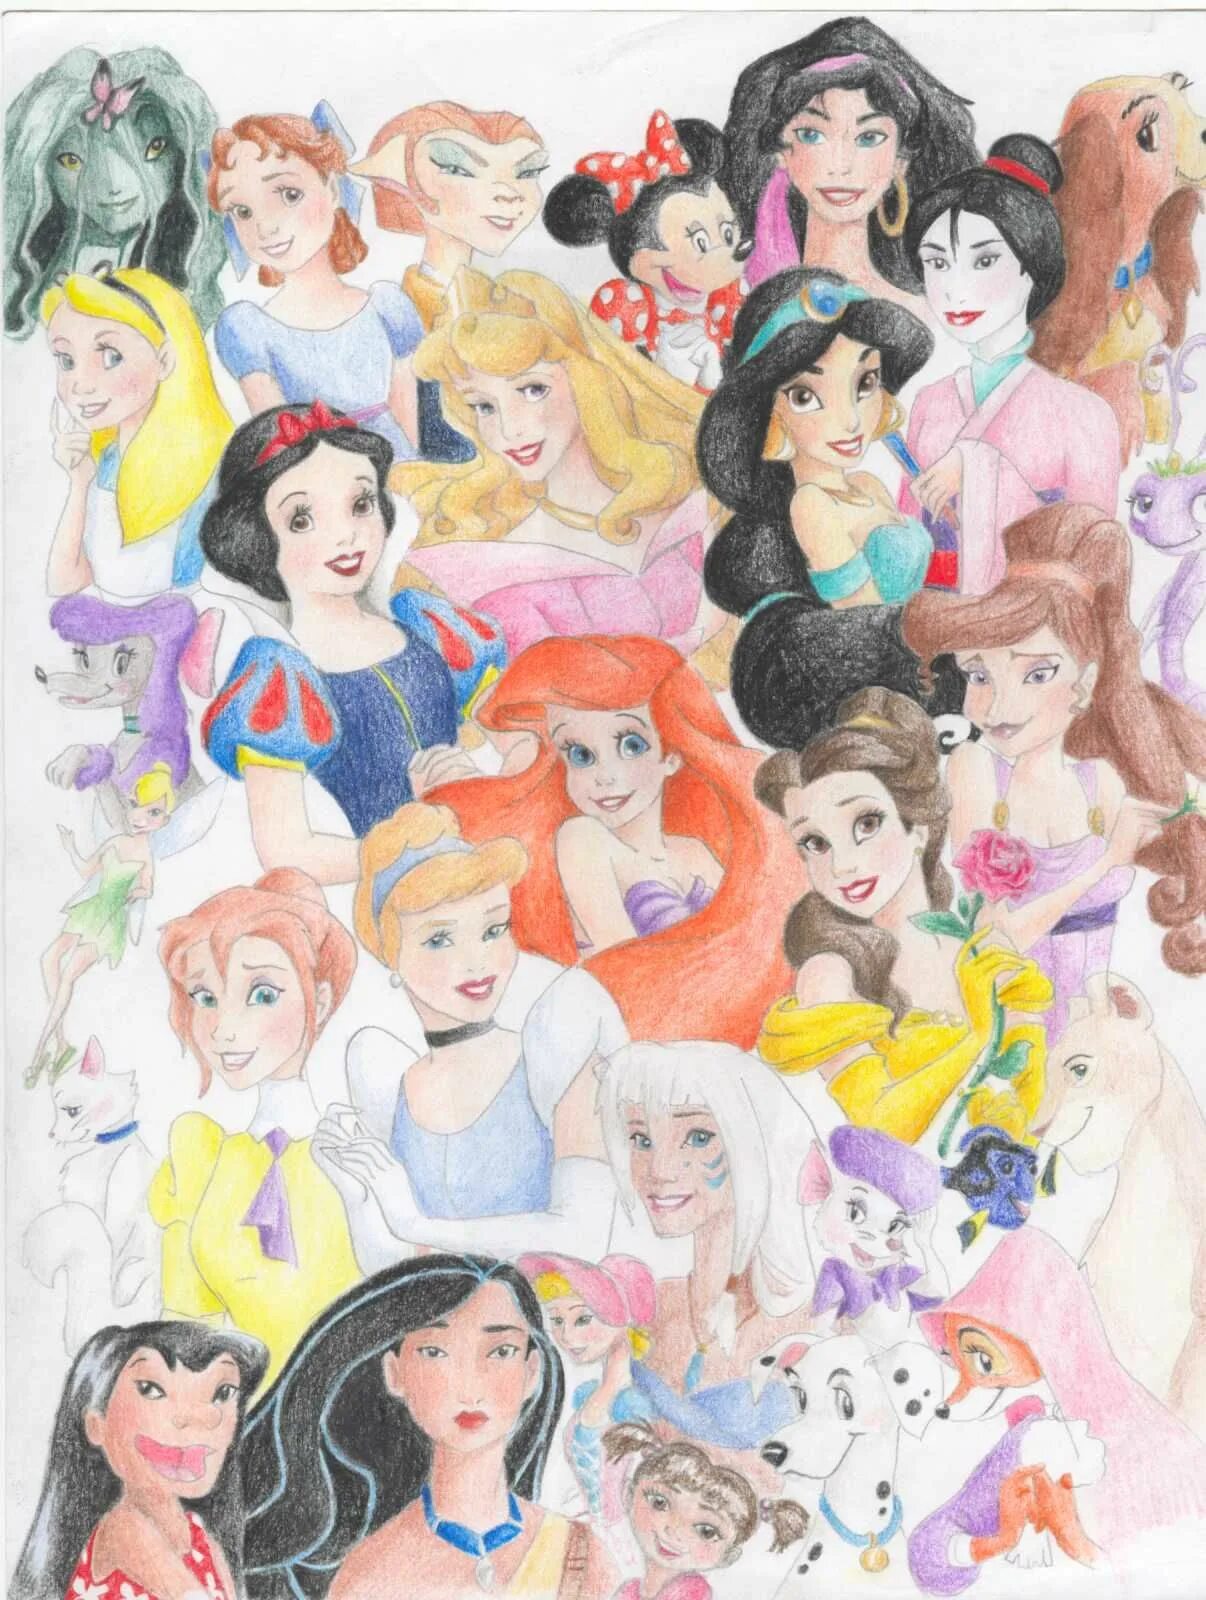 Принцессы 2021. Принцессы Диснея вместе. Диснеевские принцессы 2021. Общая картина всех Диснеевских принцесс. Селфи Диснеевских принцесс вместе.